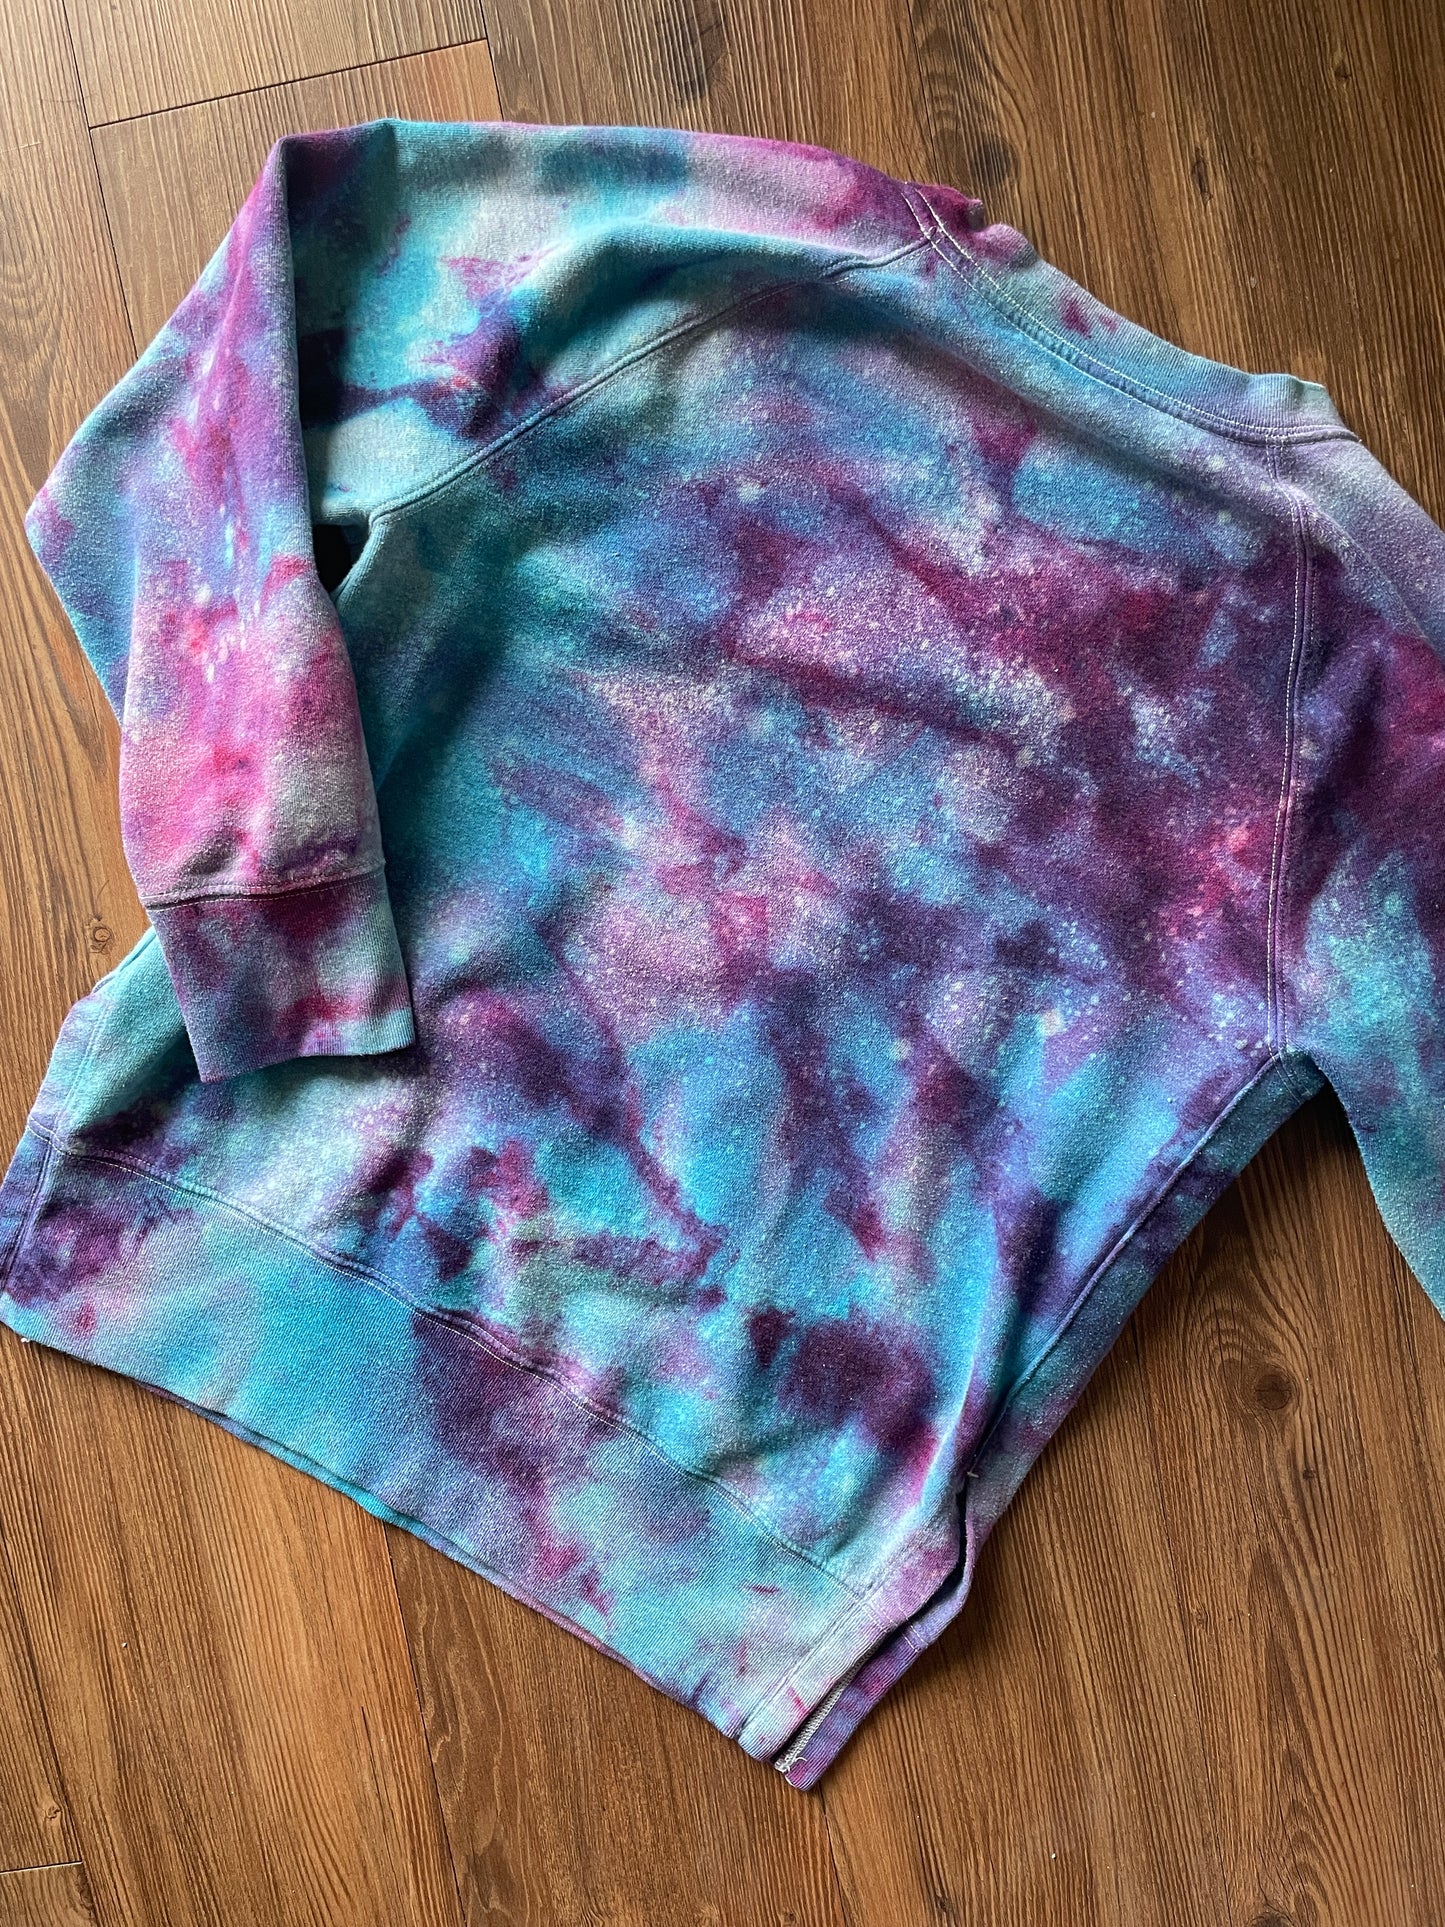 Small Women's Galaxy Dye Handmade Tie Dye Sweatshirt | Purple and Pink Galaxy Ice Dye Tie Dye Sweatshirt